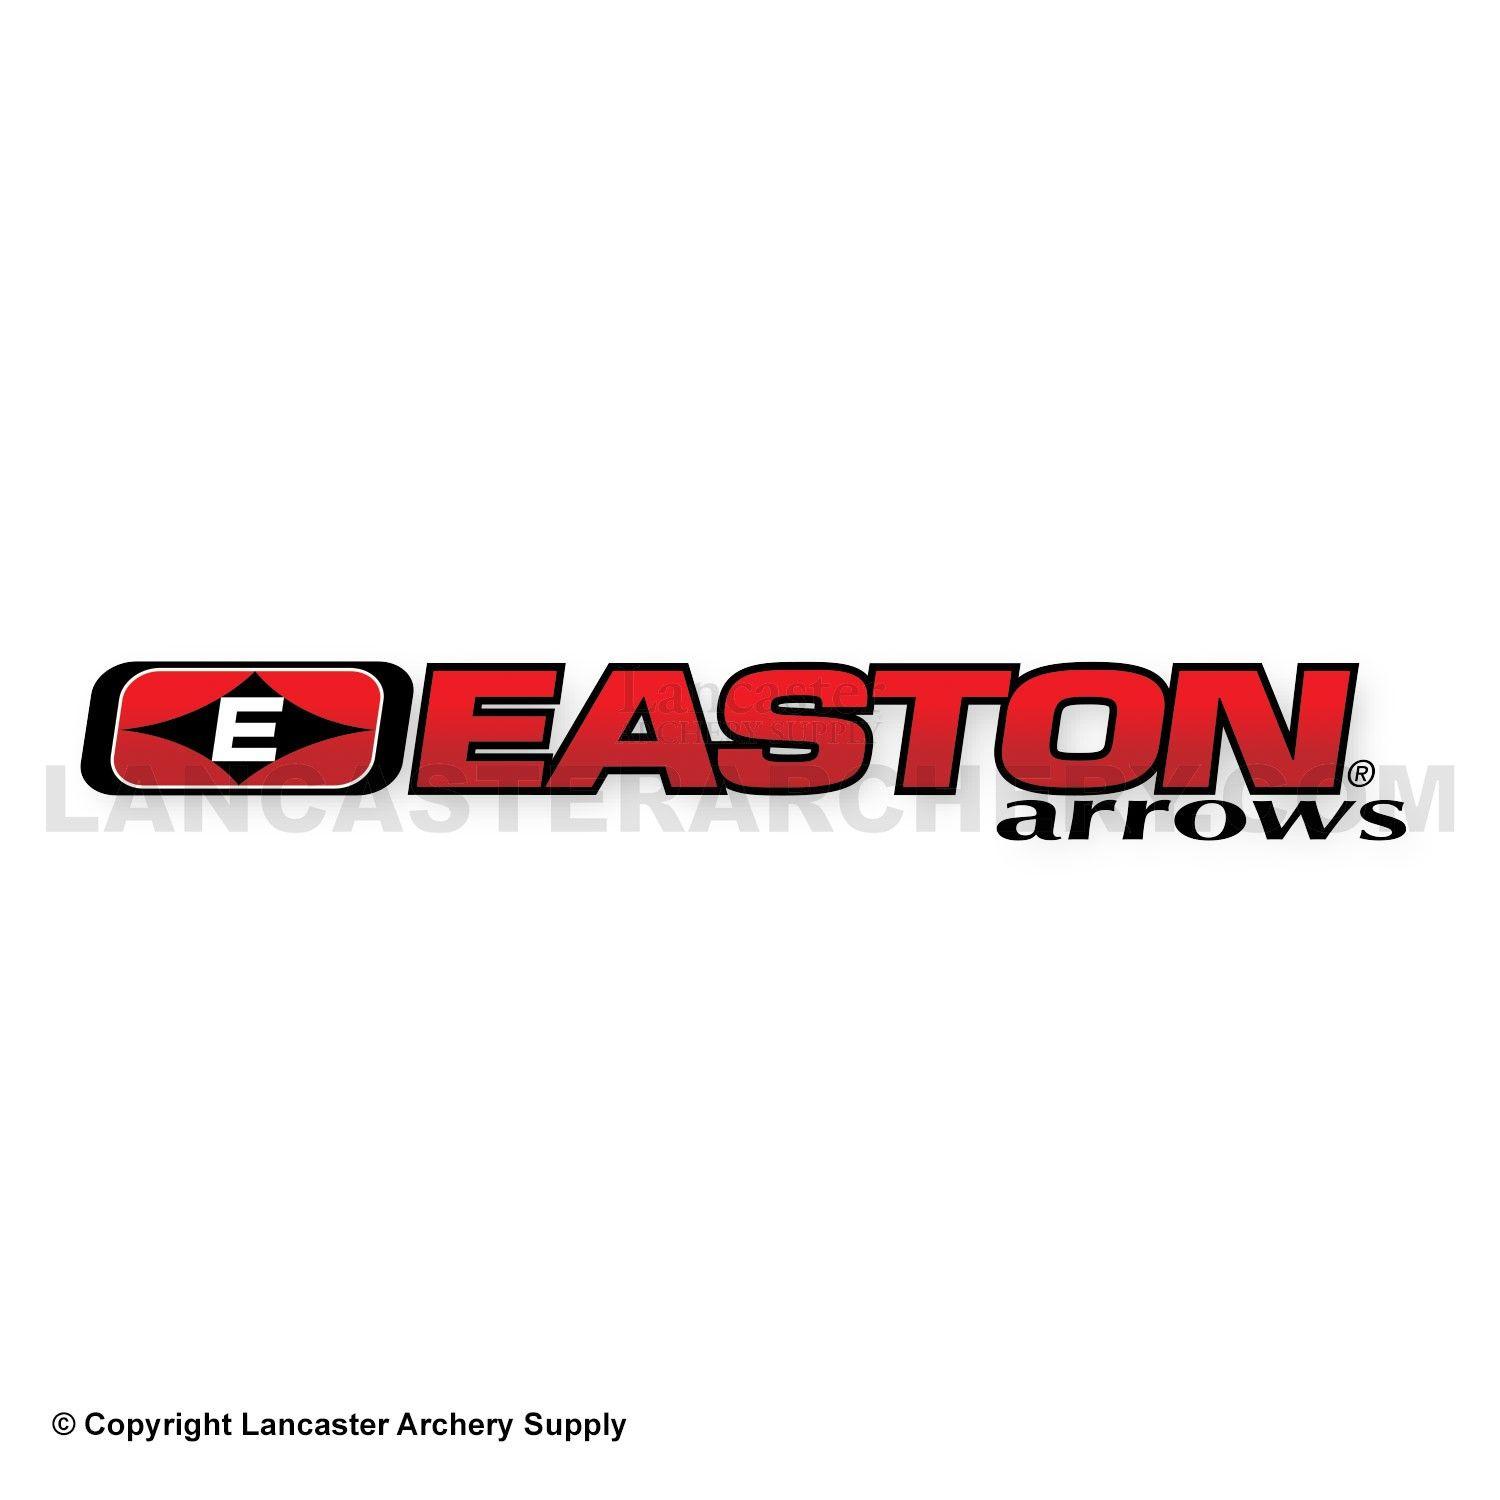 Easton Archery Logo - Easton Arrows Logo Decal